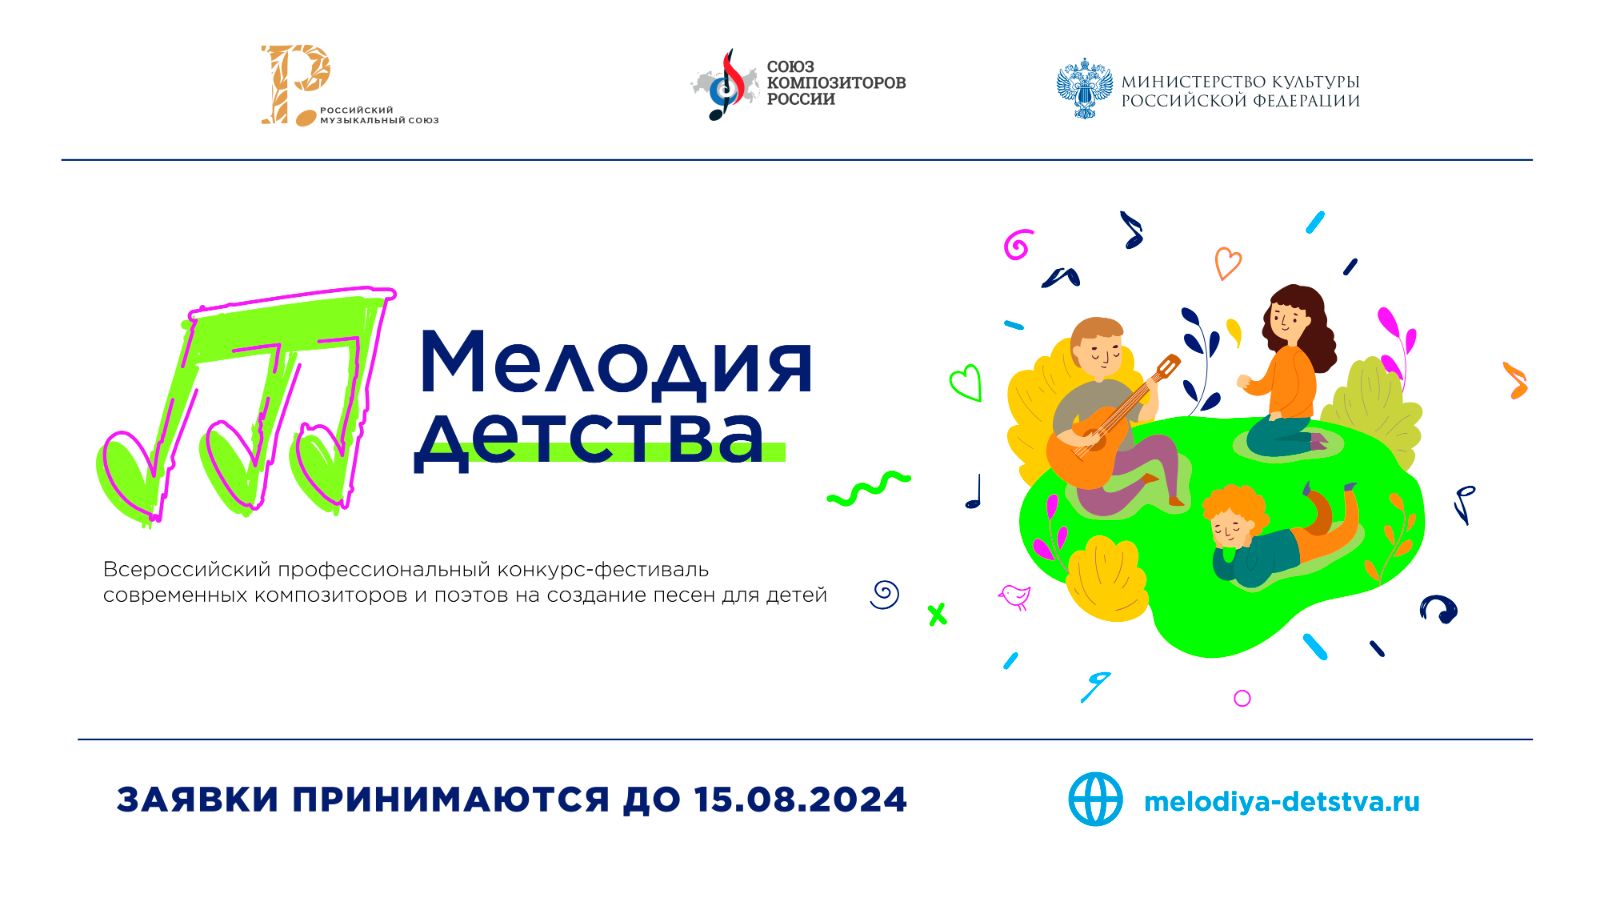 Конкурс-фестиваль «Мелодия детства» поддержали крупные партнеры из разных регионов России